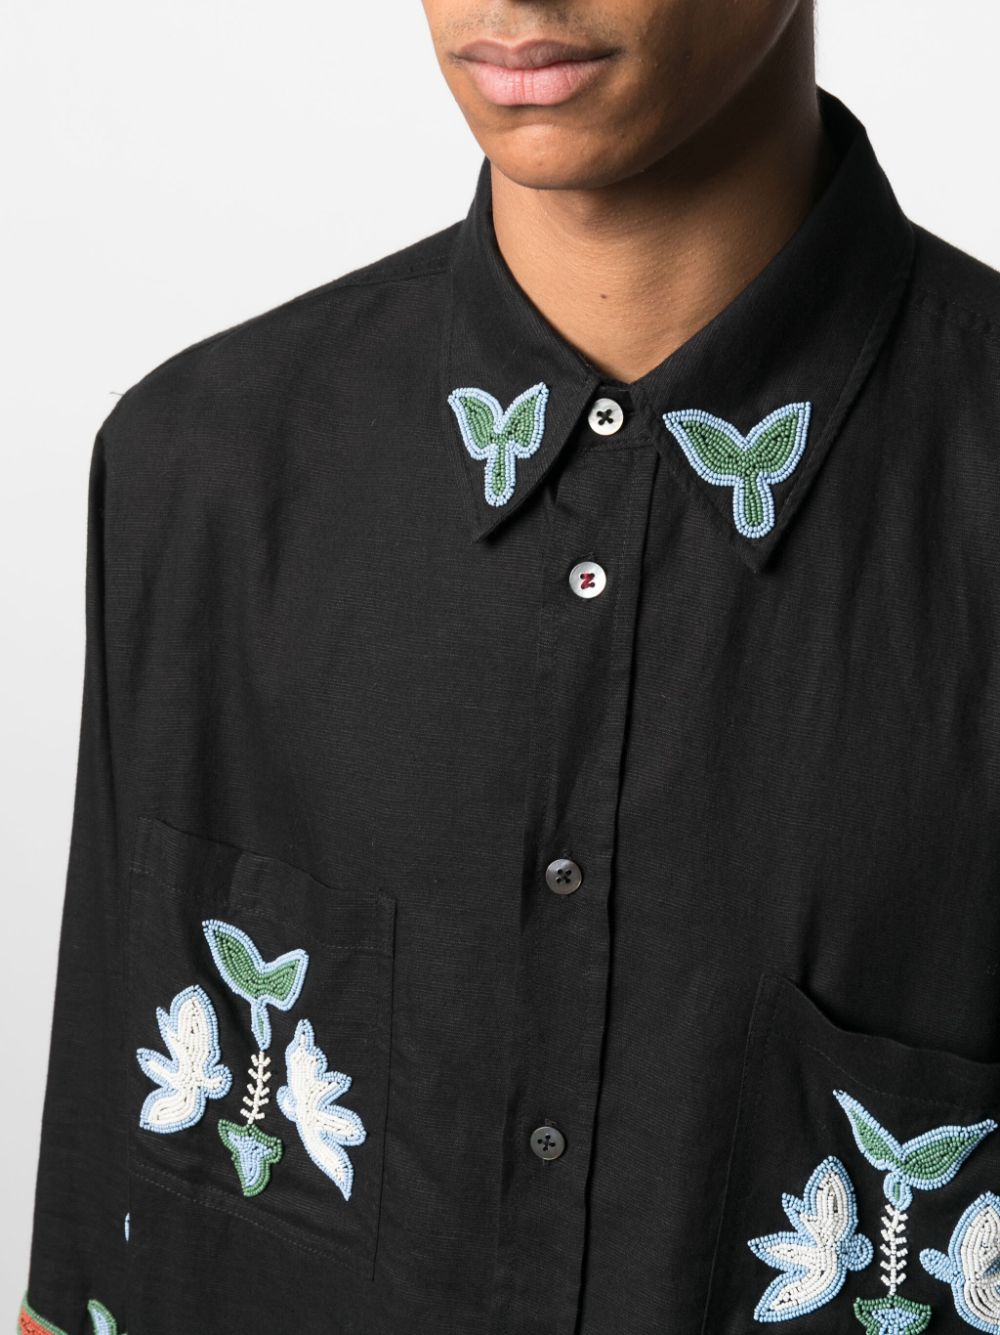 Baziszt BAZISZT- Floral Embroidered Shirt